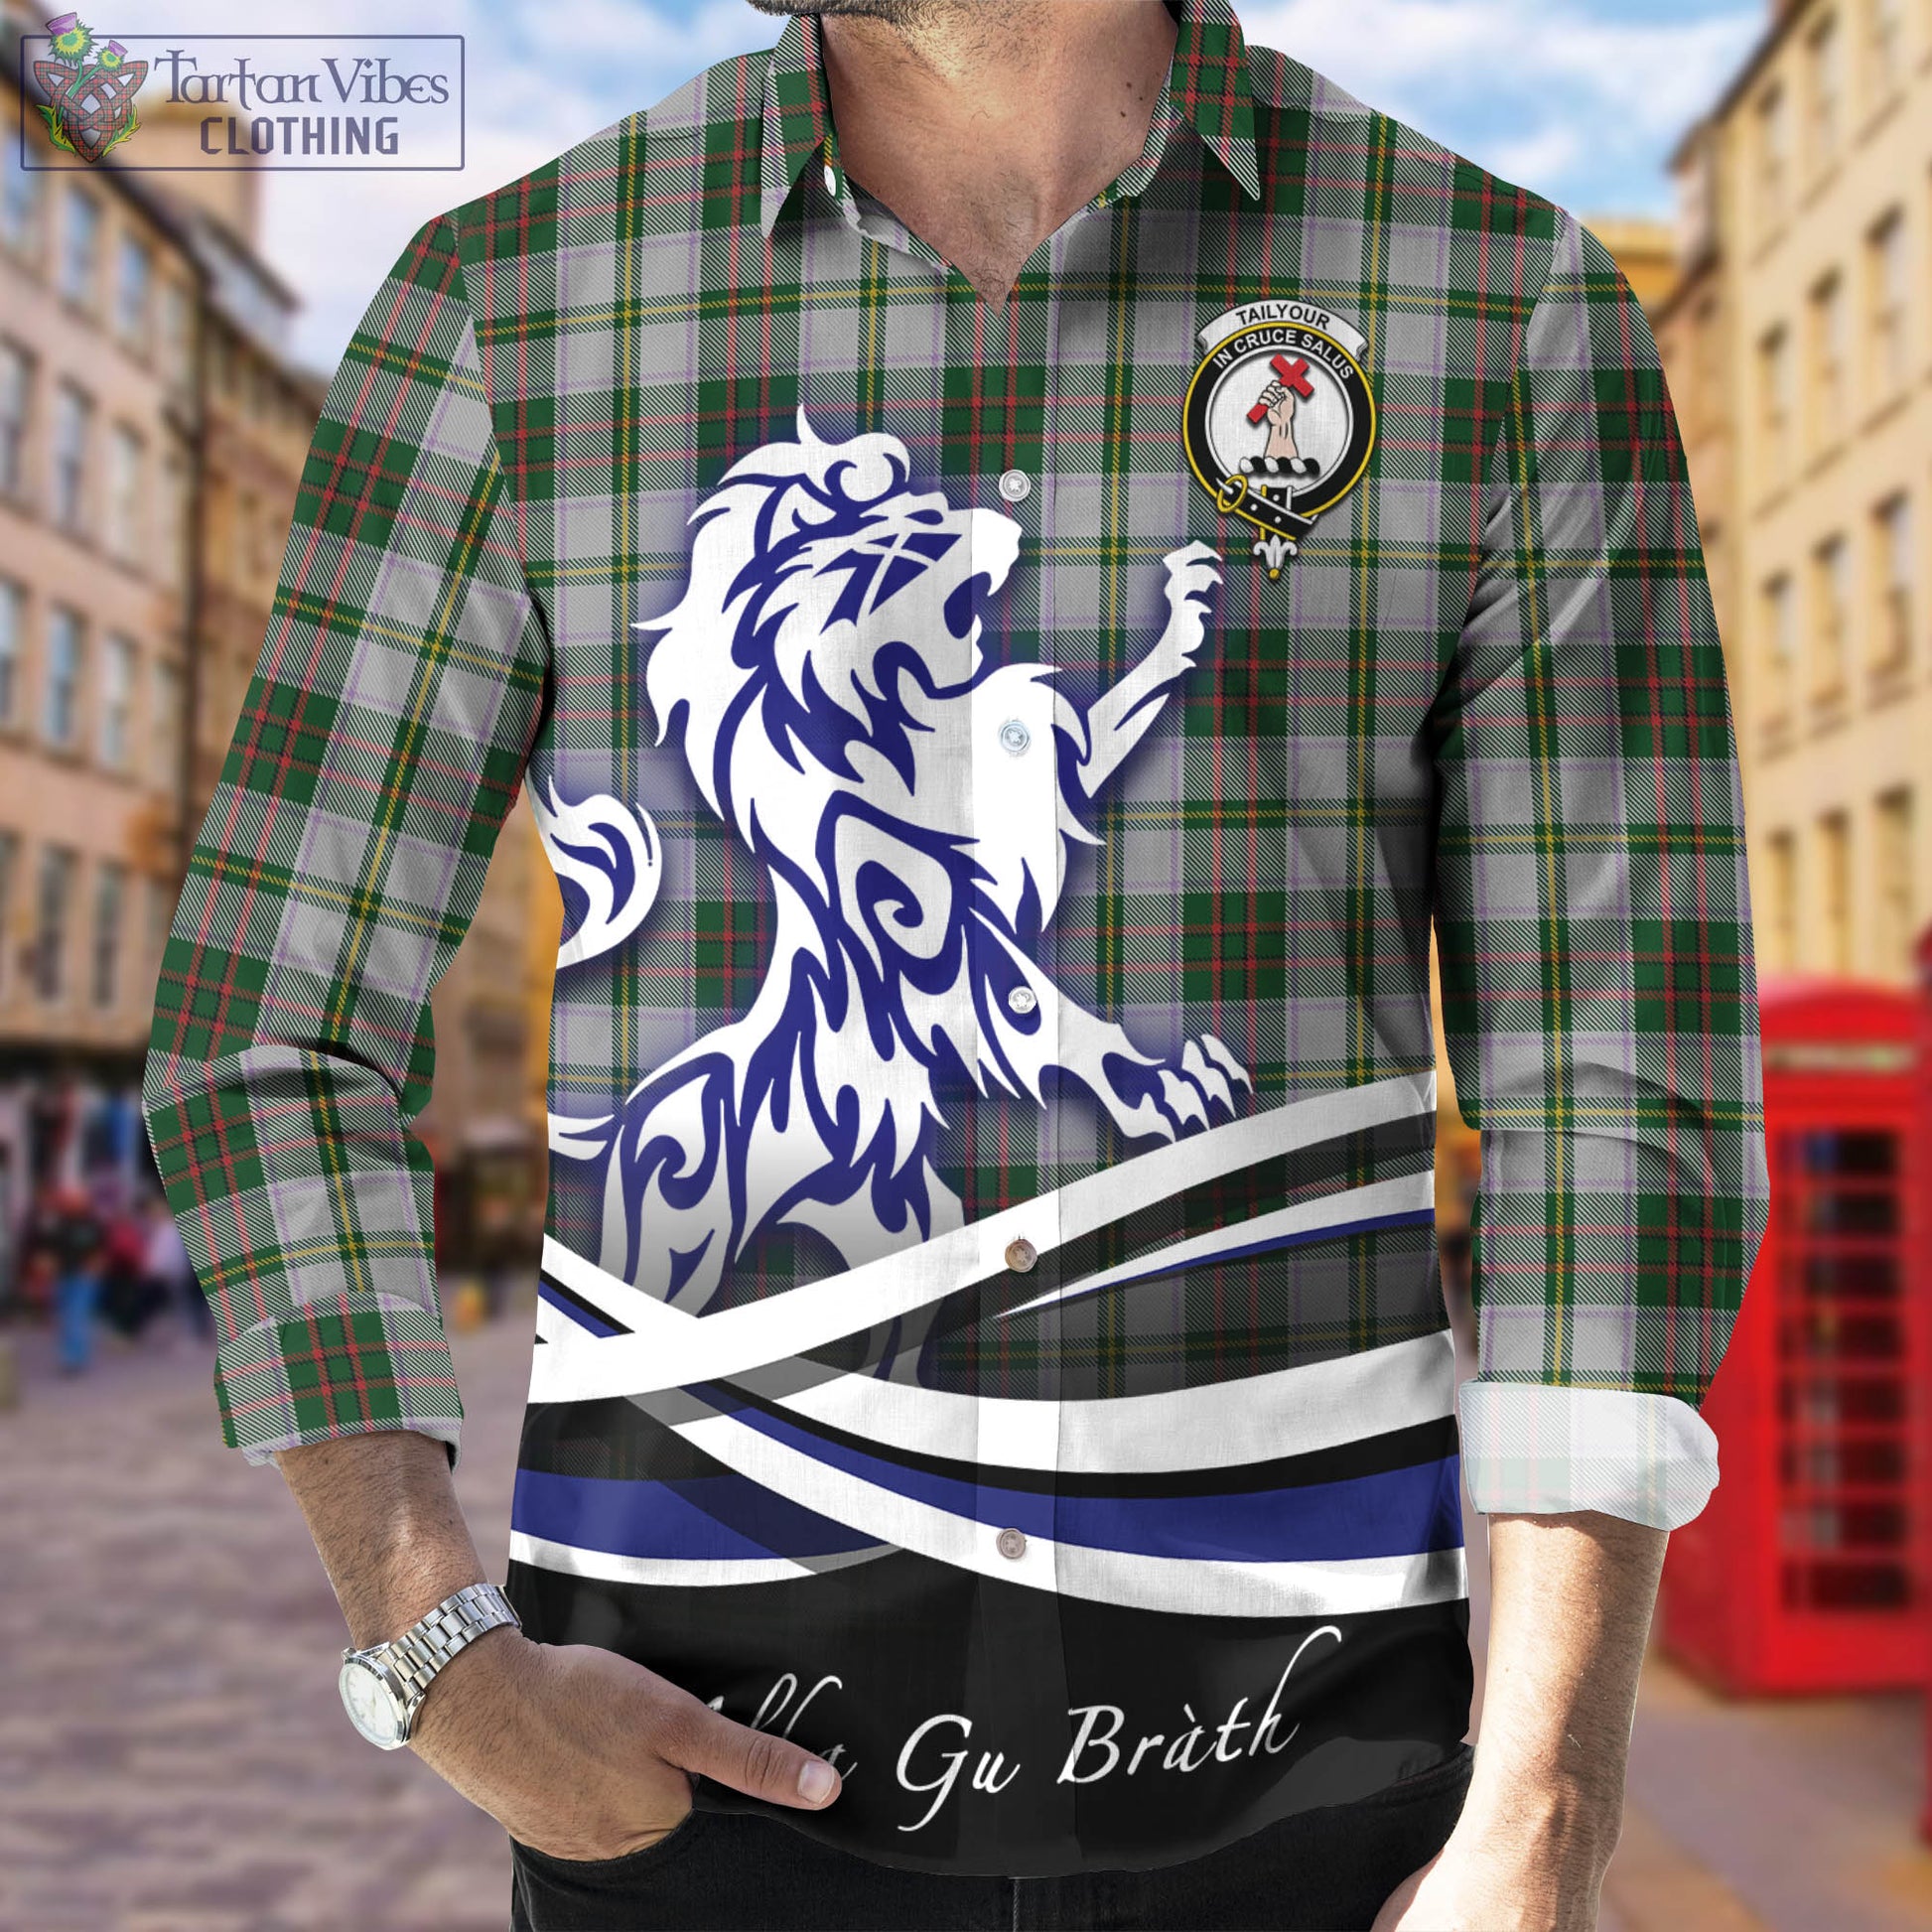 taylor-dress-tartan-long-sleeve-button-up-shirt-with-alba-gu-brath-regal-lion-emblem